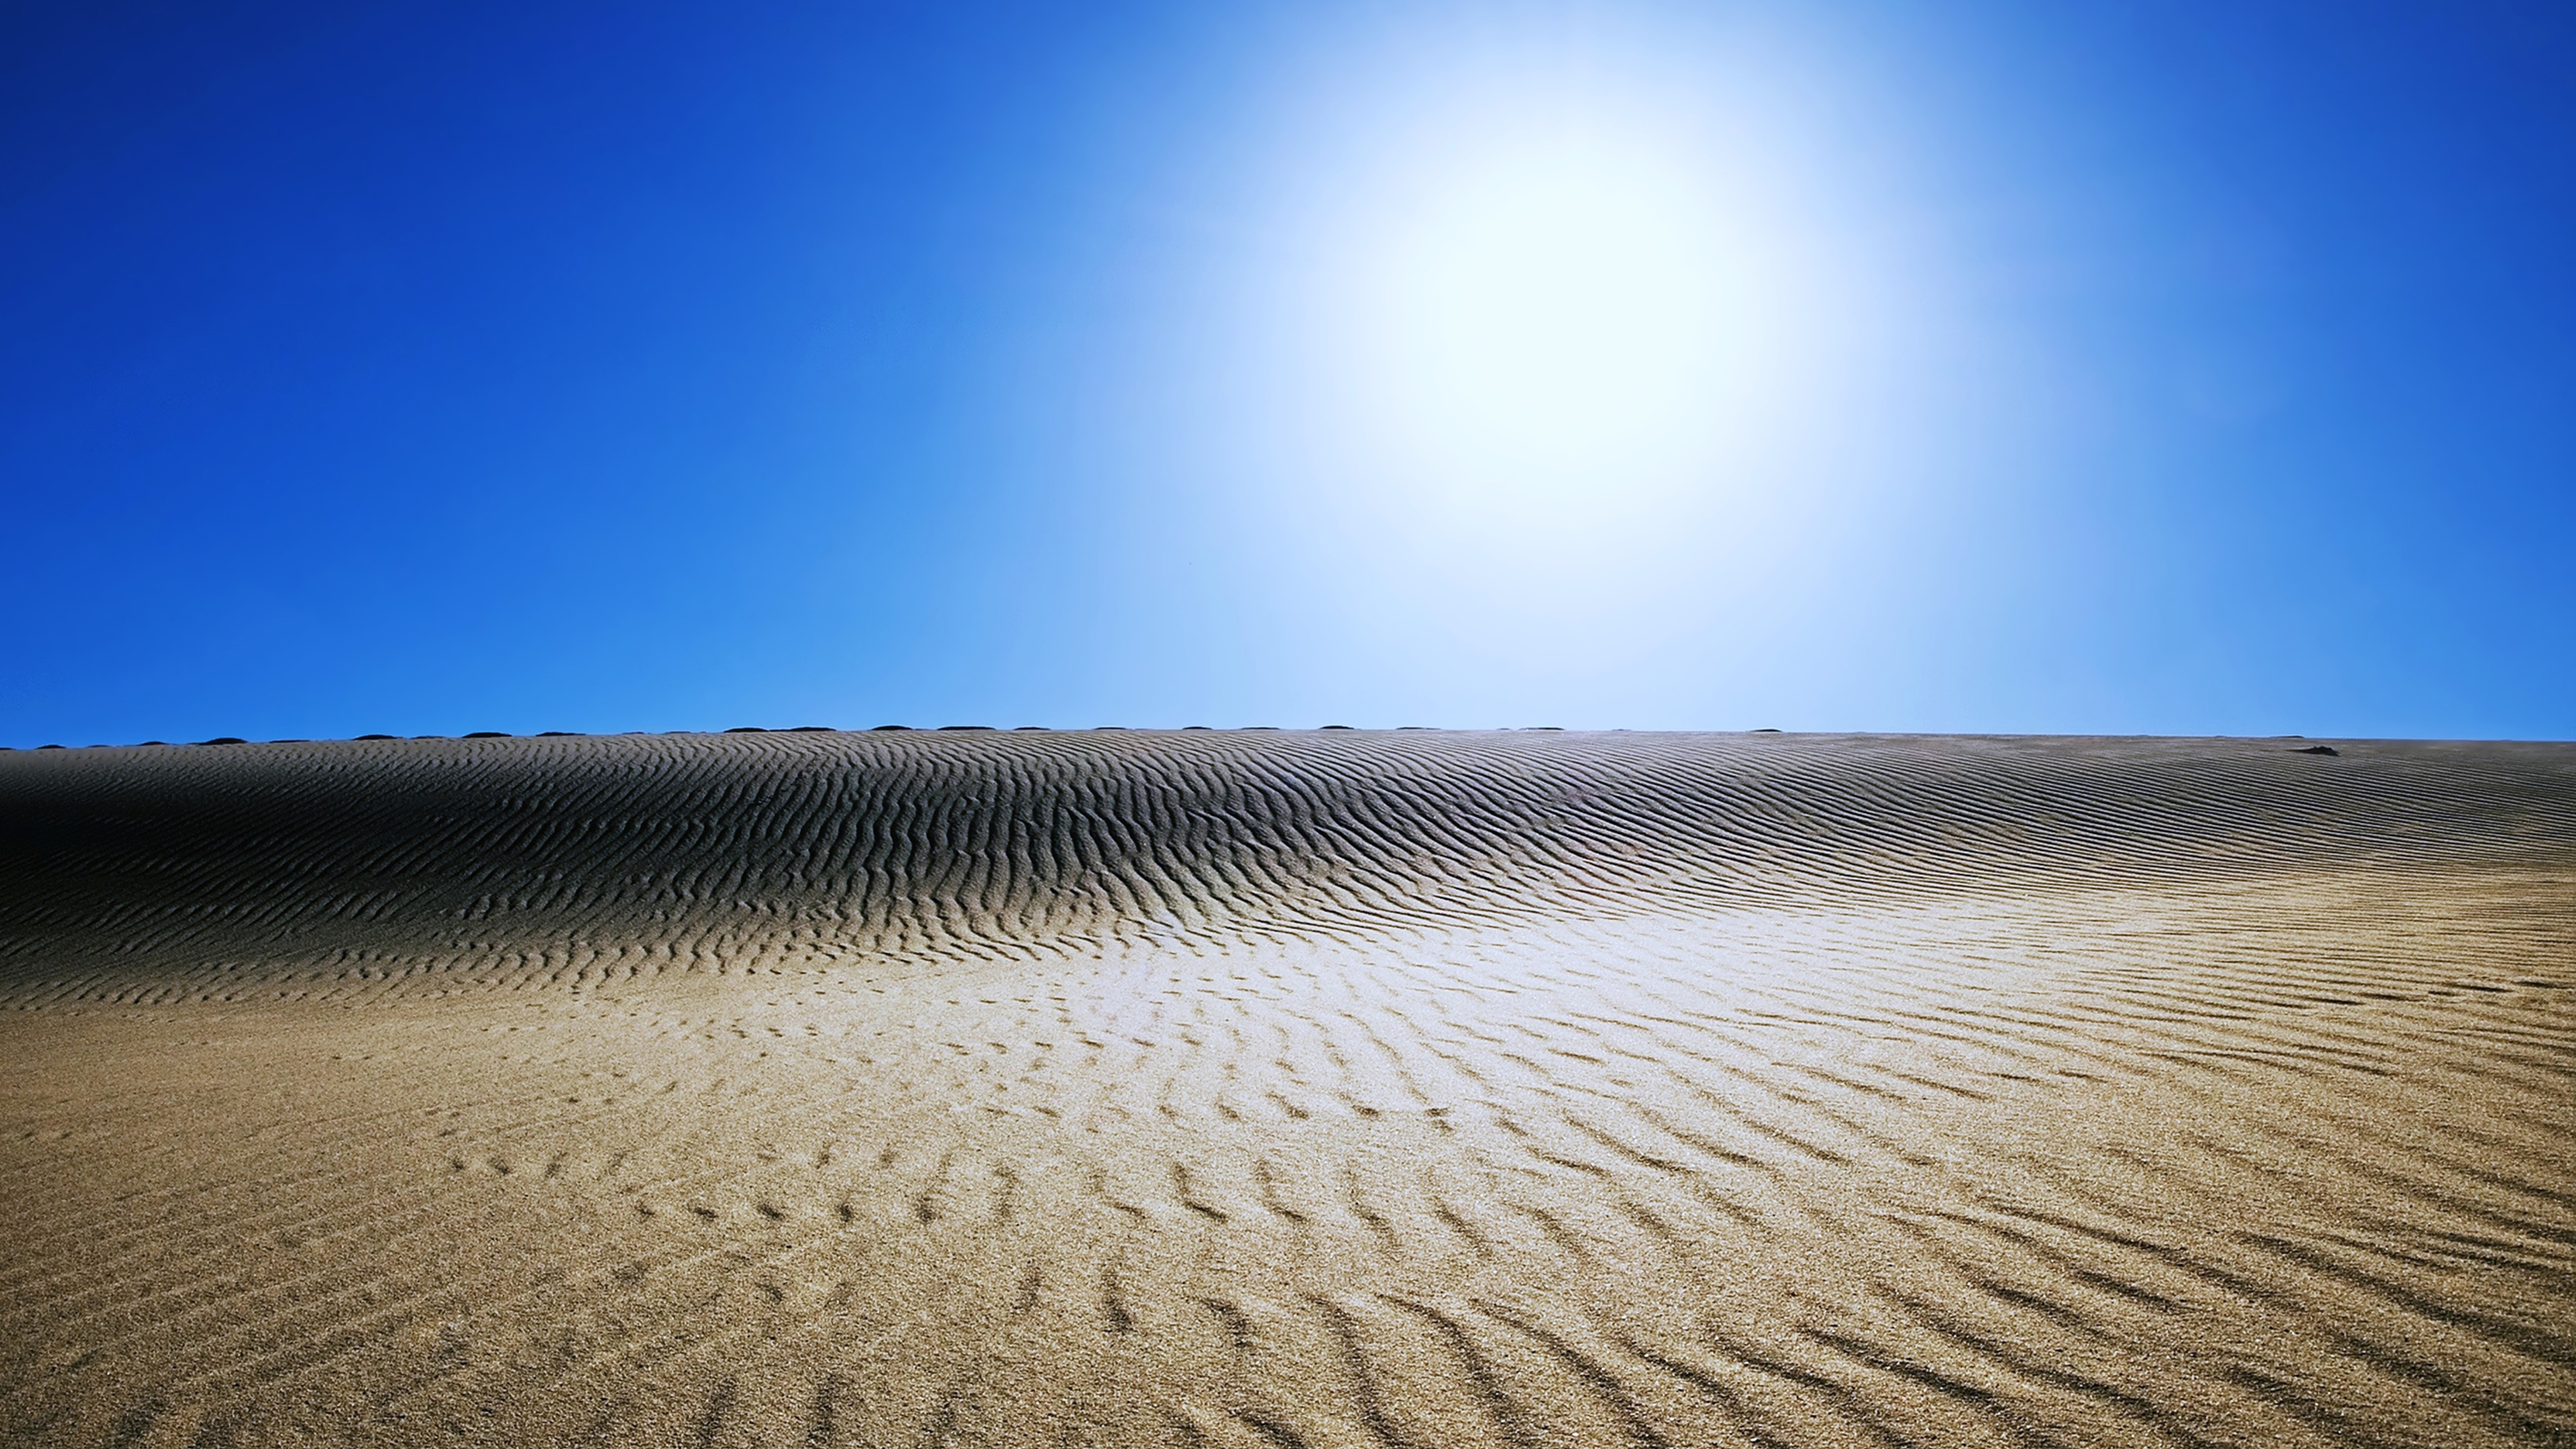 Sahara Desert 4k - Erg - HD Wallpaper 